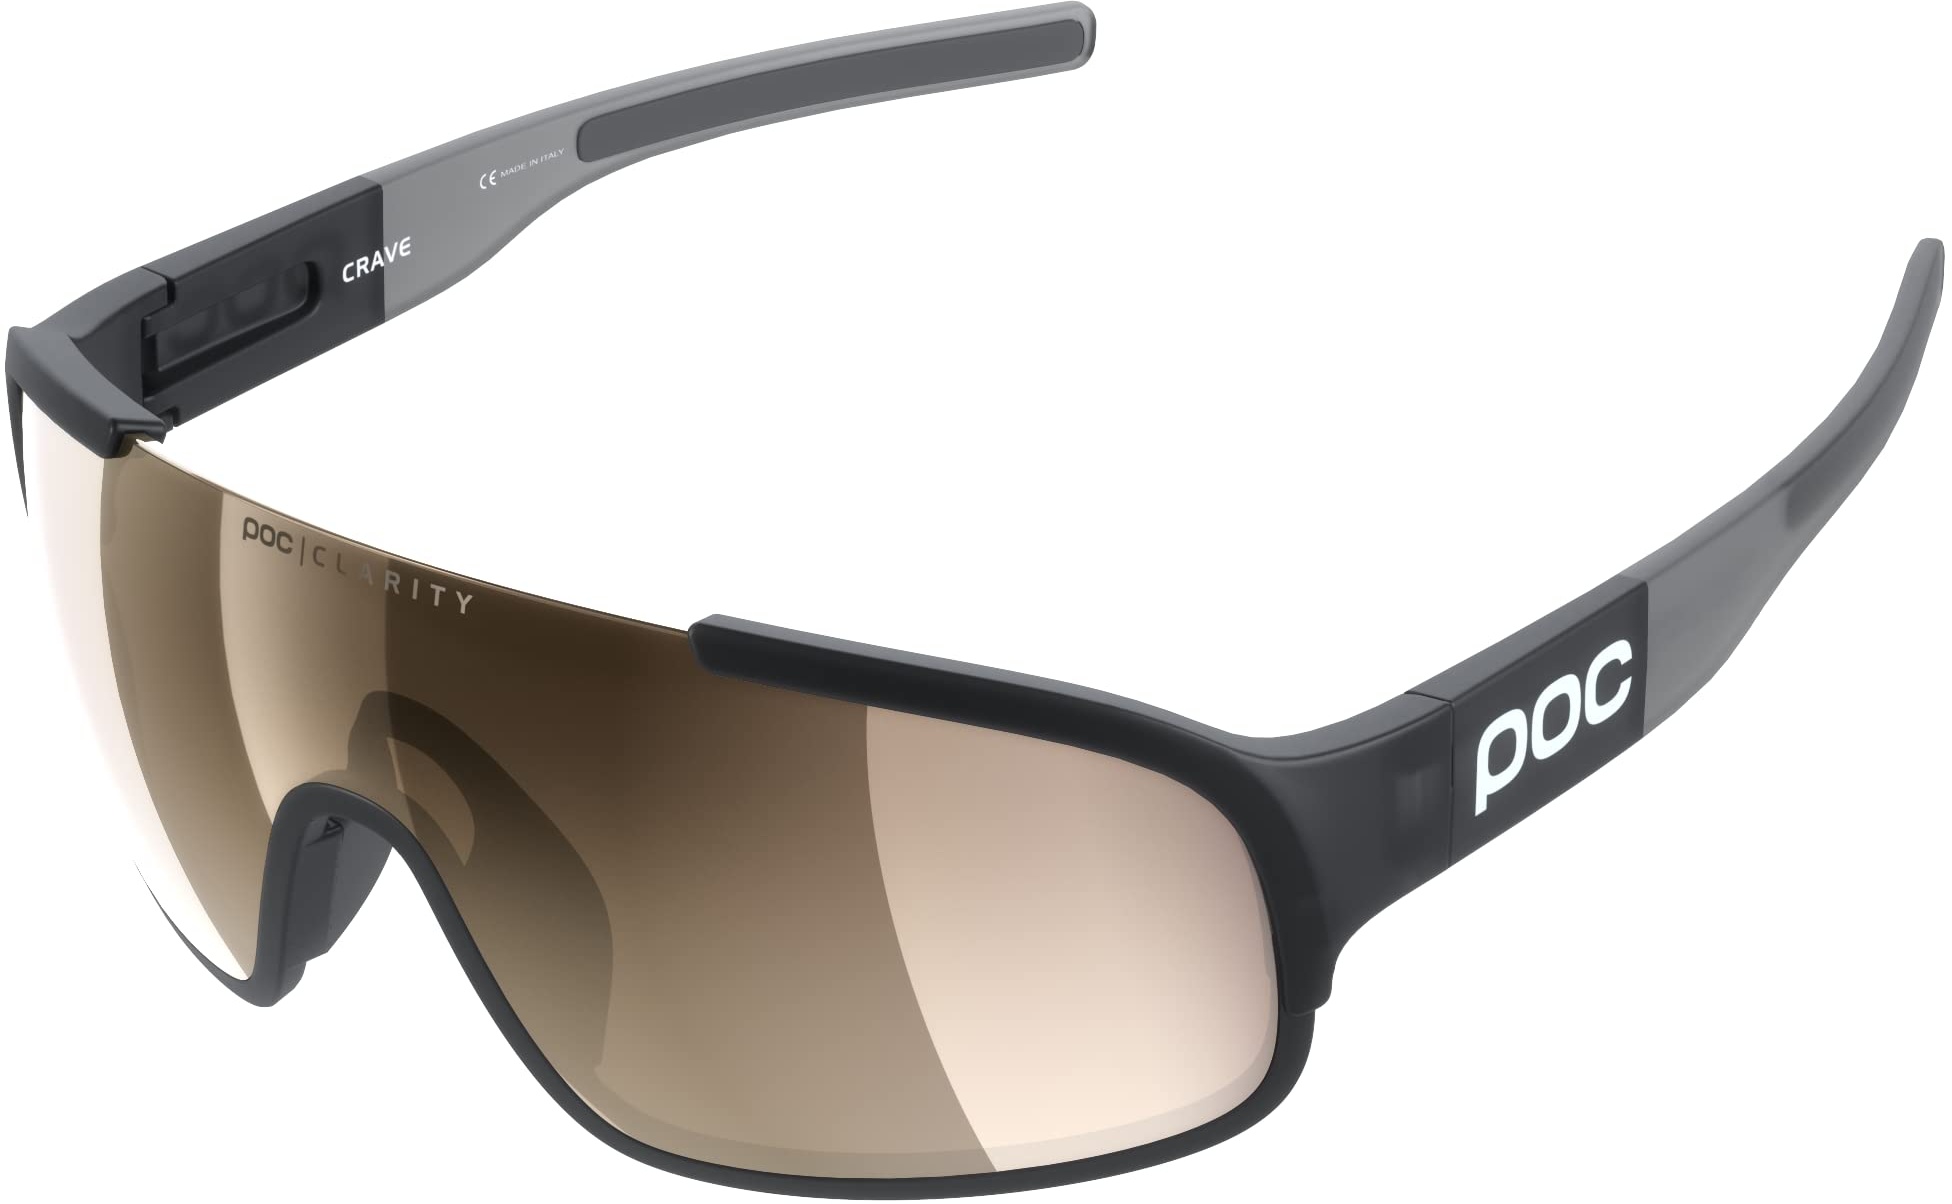 POC Crave Sonnenbrille - Sportbrille mit einem leichten, flexiblen und strapazierfähigen Grilamid-Rahmen ideal für jede sportliche Herausforderung, Uranium Black Translucent/Grey